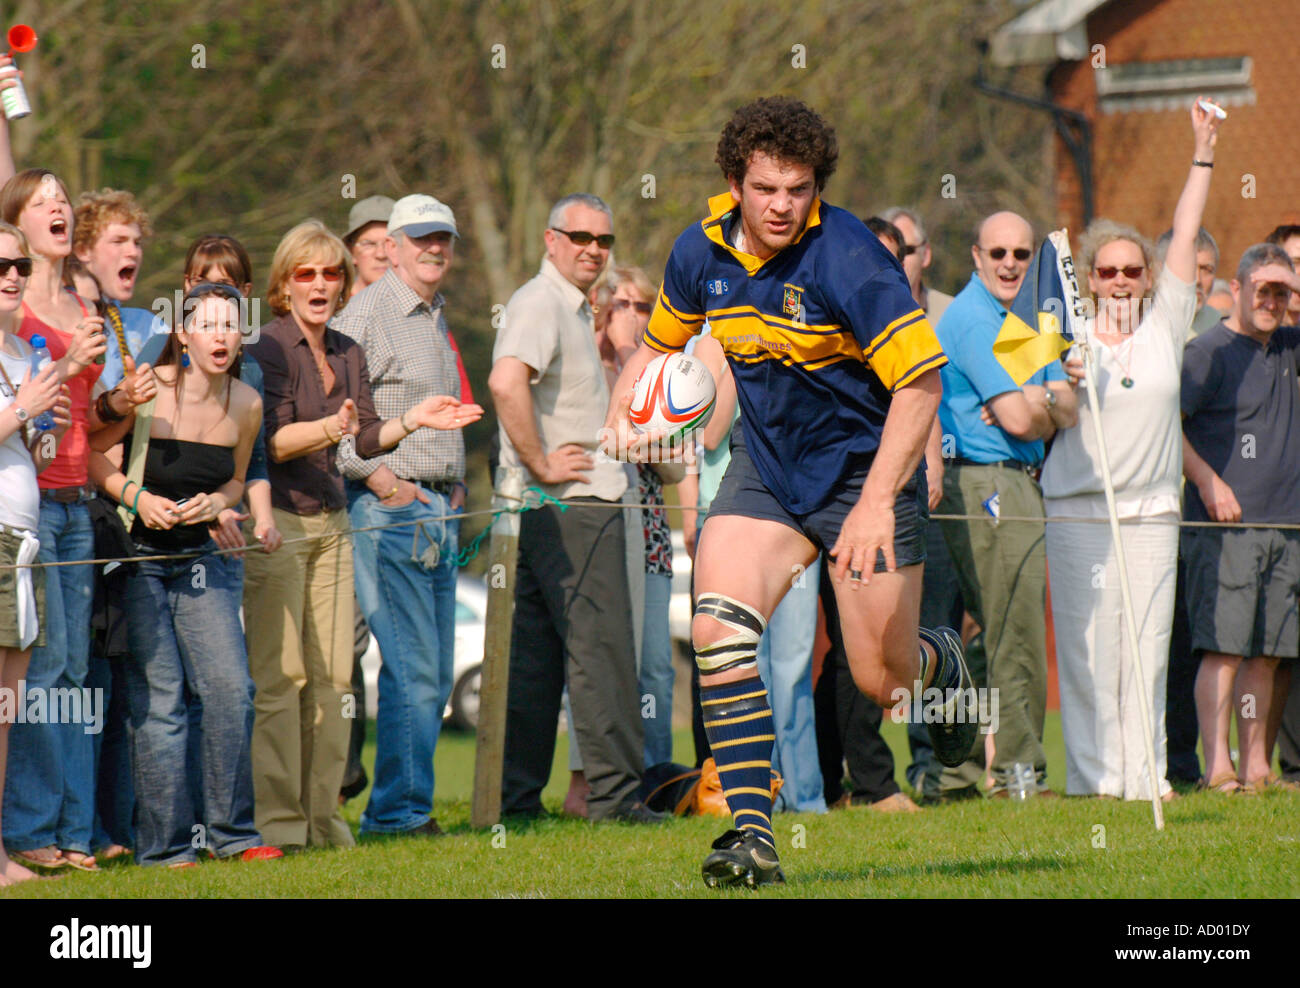 Die Menge jubelt wie ein Rugby-Spieler von Eastbourne ist in der Nähe von scoring einen Versuch. Bild von Jim Holden. Stockfoto